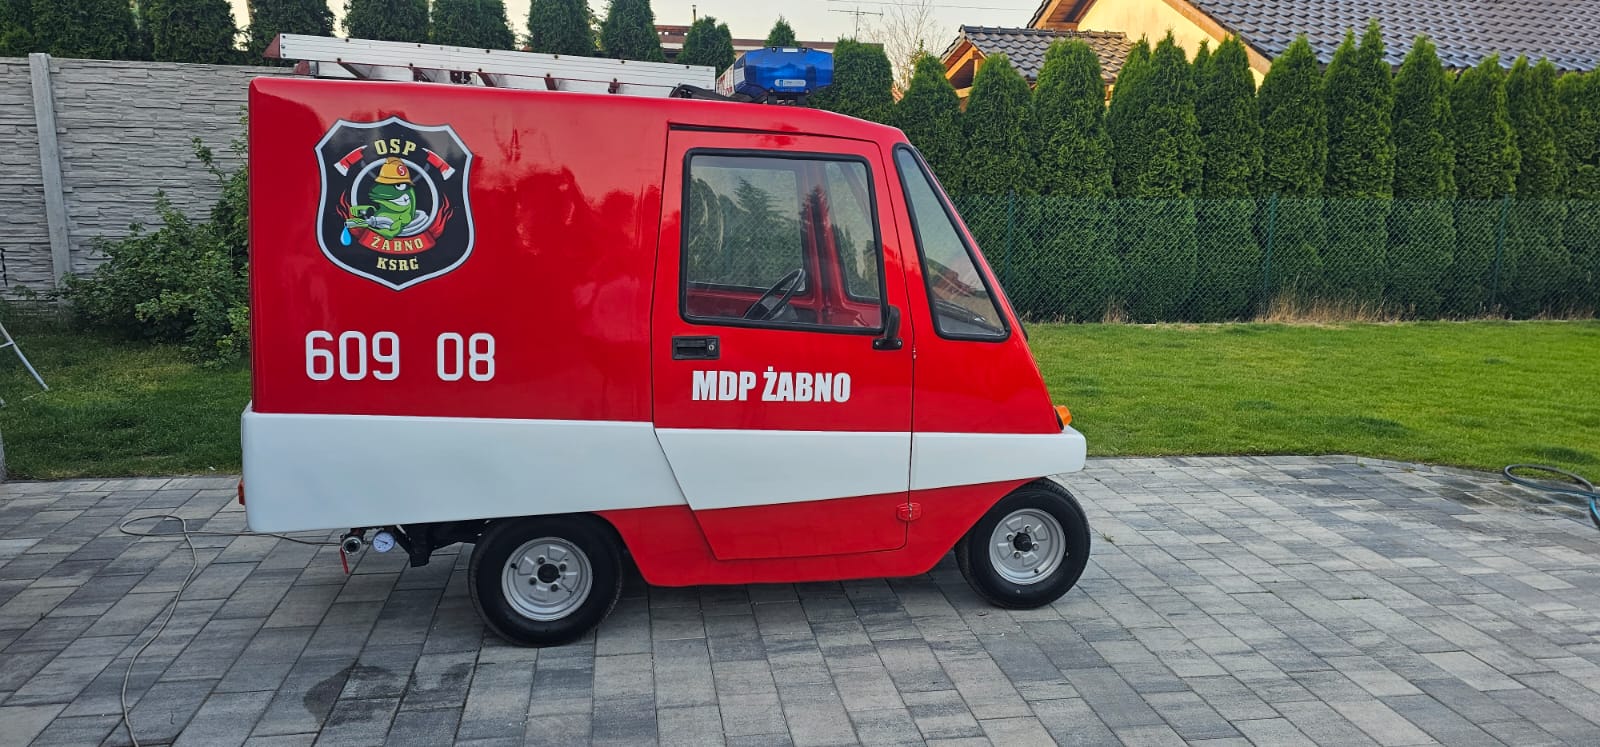 Nowy ‘wóz’ strażacki MDP Żabno